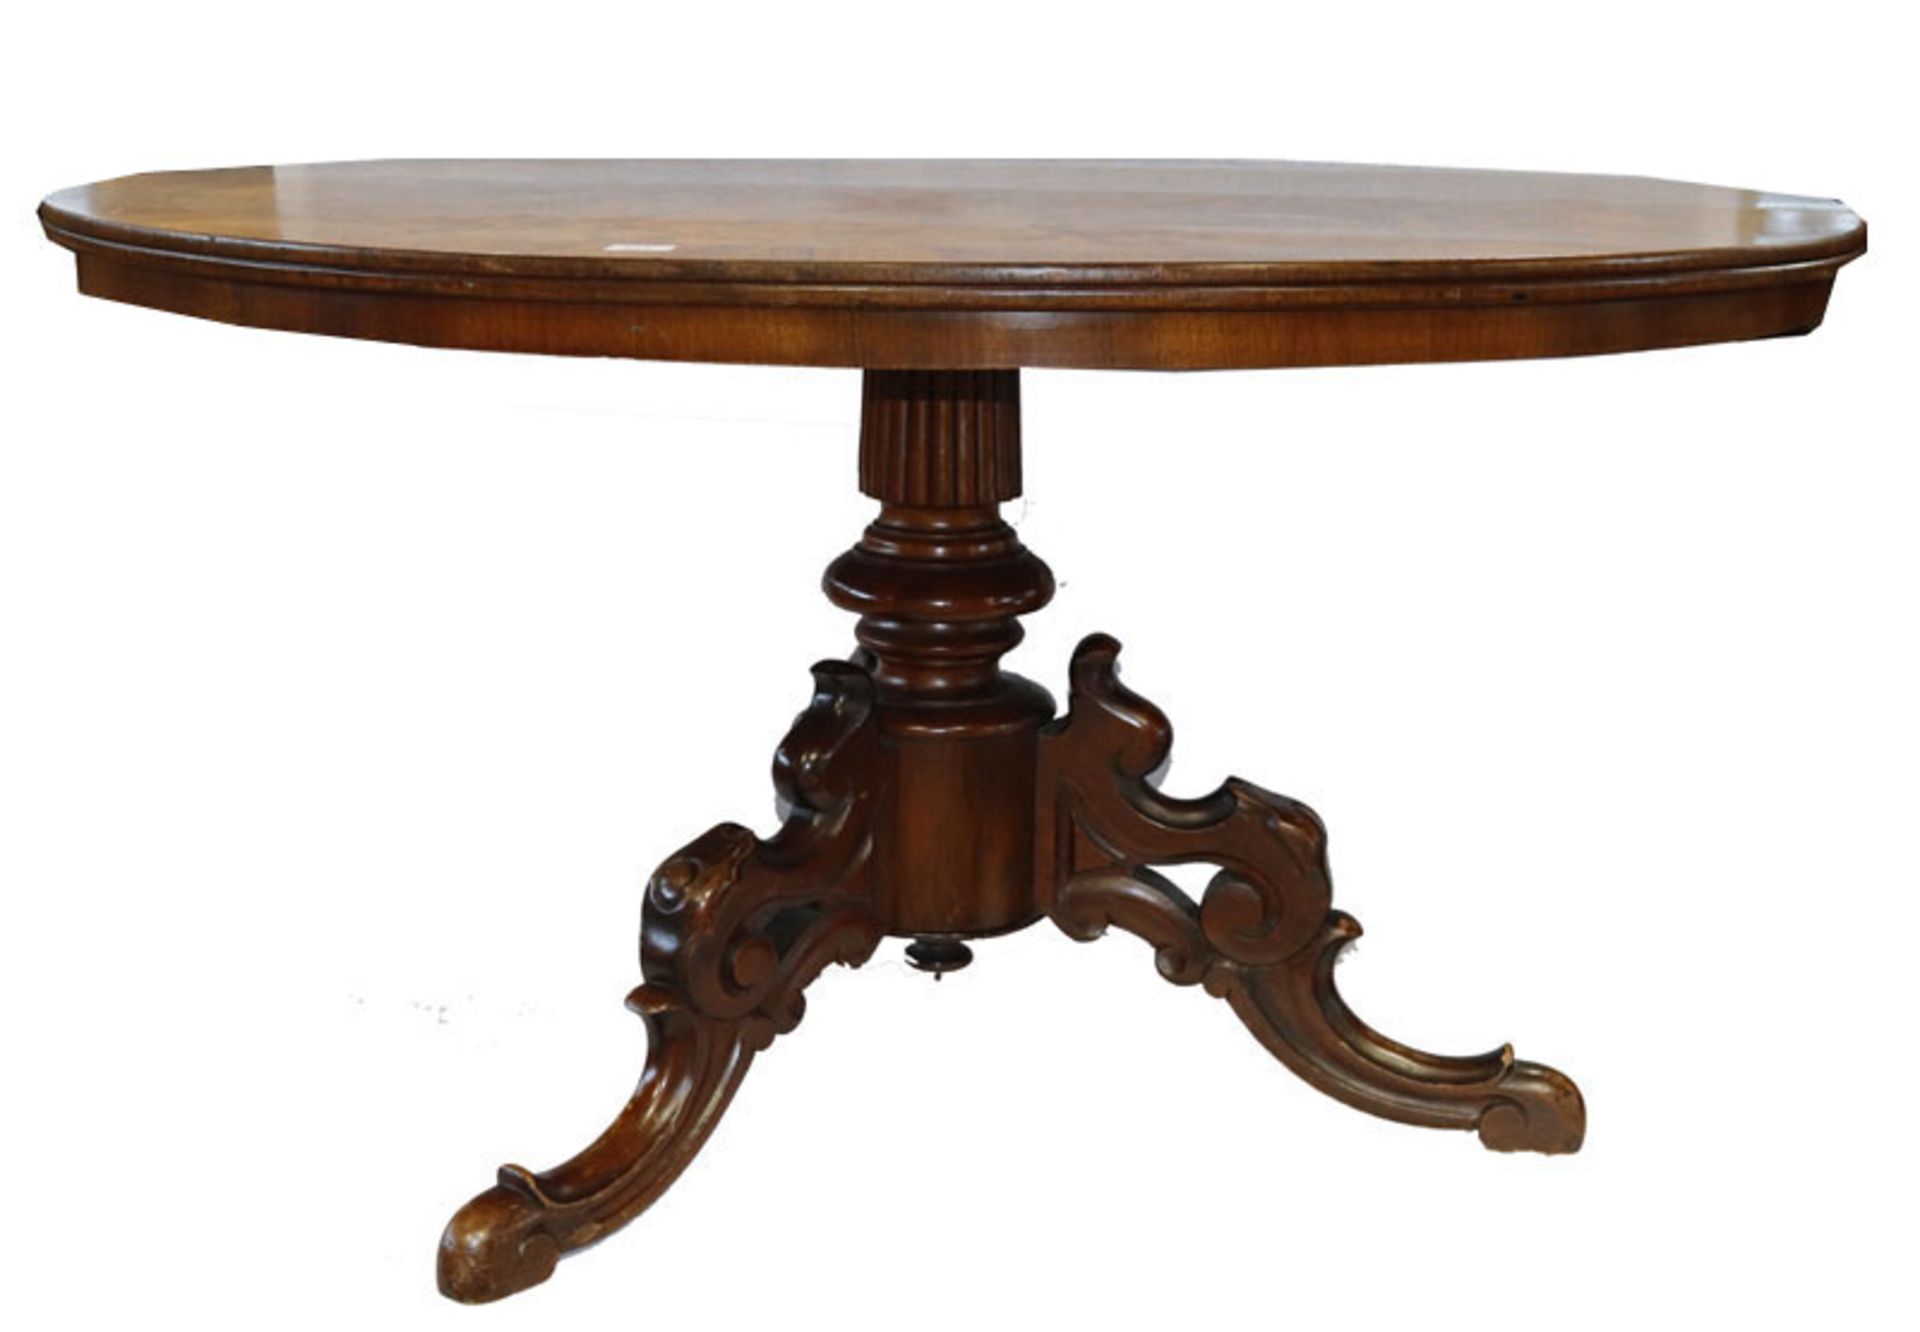 Ovaler Tisch auf Mittelfuß mit 3 beschnitzten Beinen, H 67 cm, B 125 cm, T 94 cm, Gebrauchsspuren,